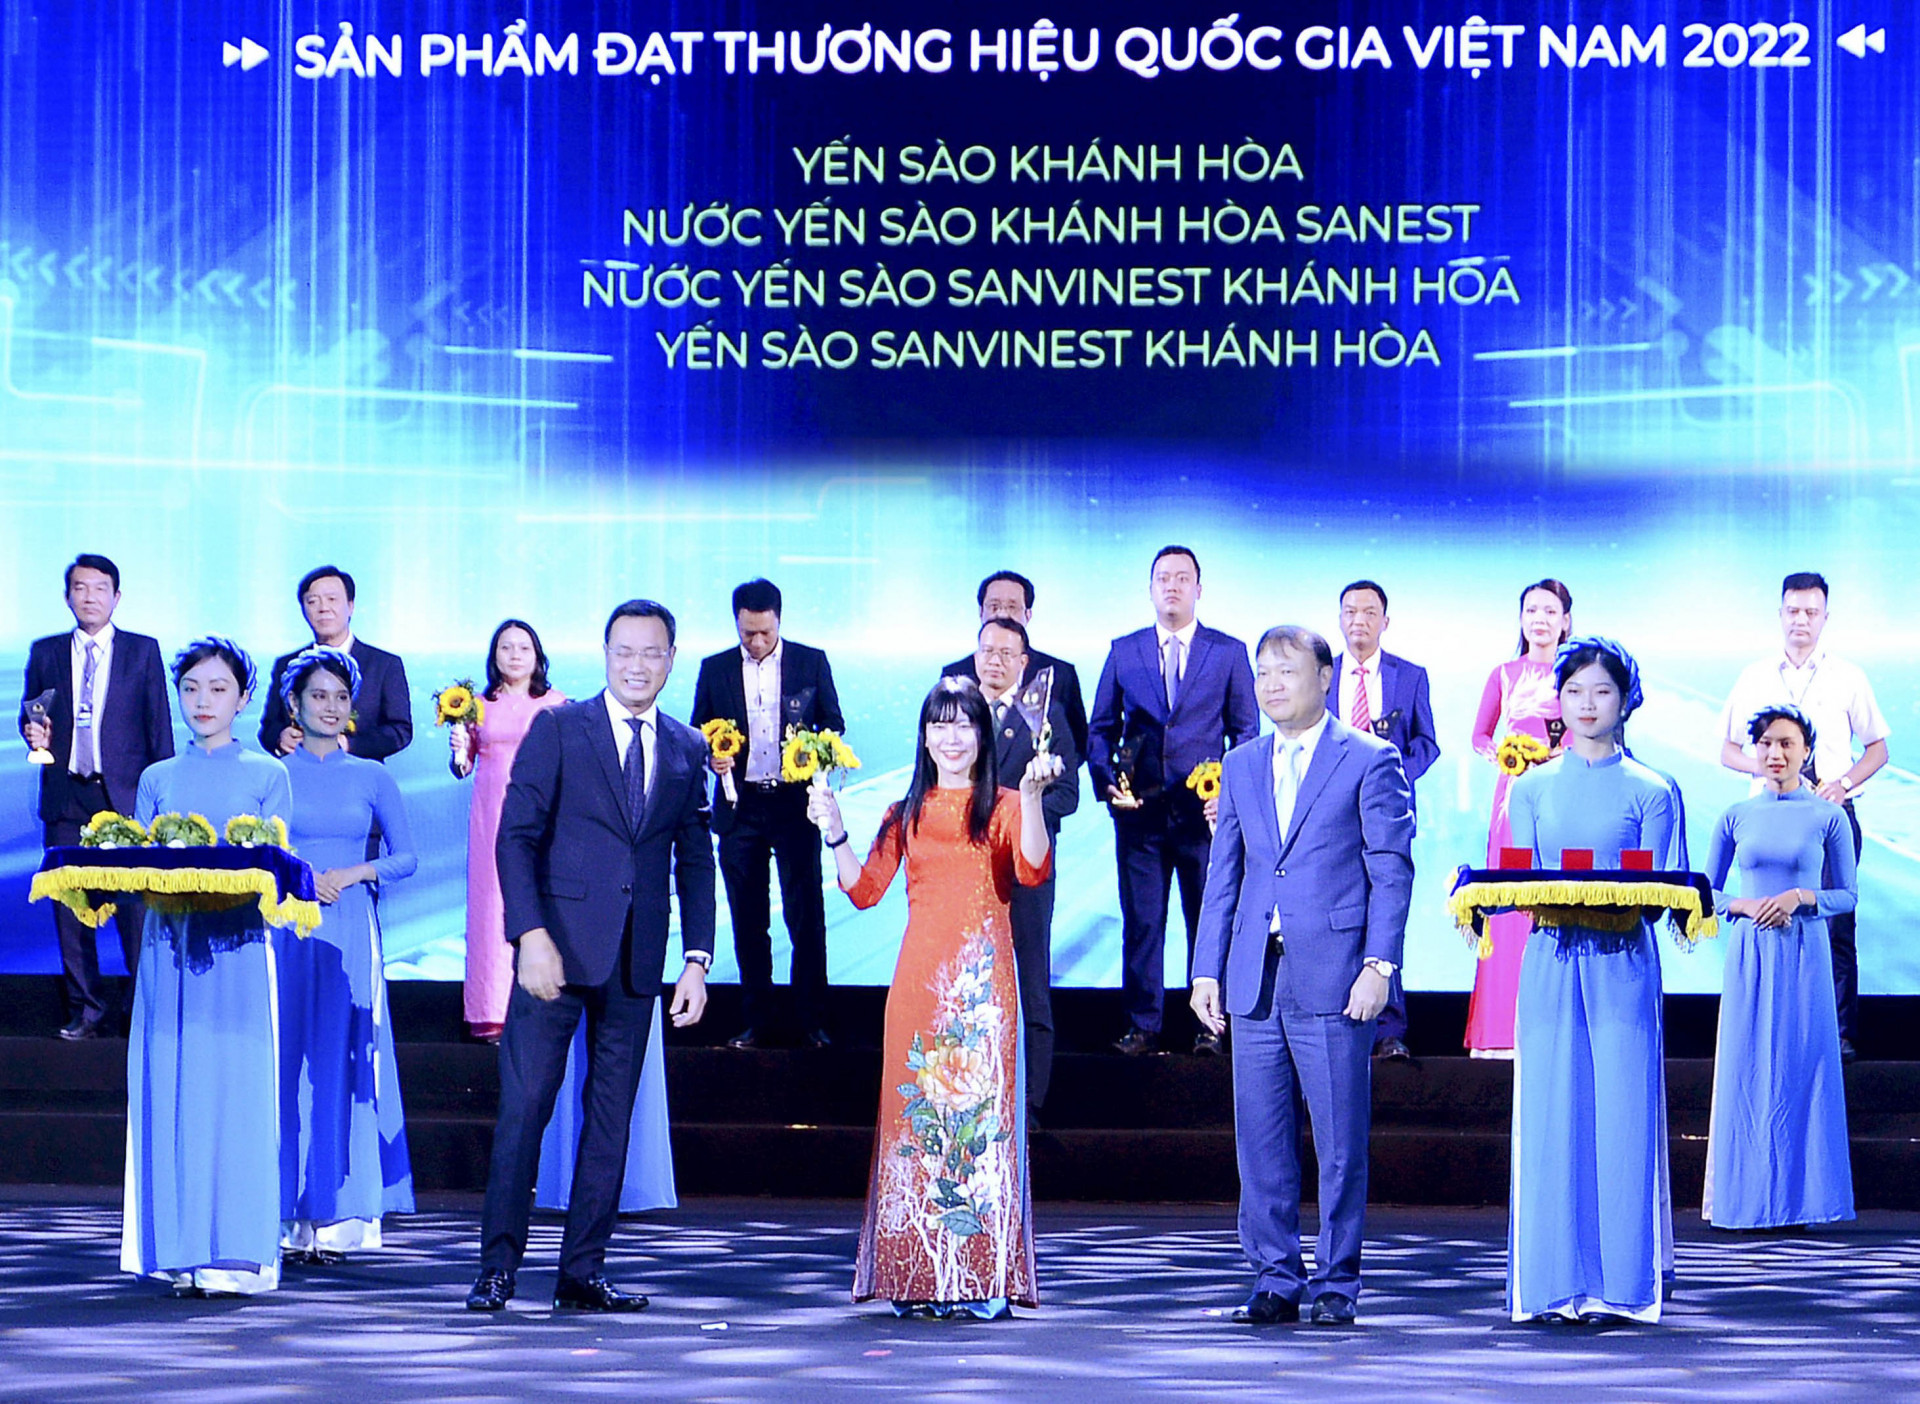 Phó Tổng giám đốc Công ty Yến sào Khánh Hoà nhận chứng nhận Thương hiệu quốc gia